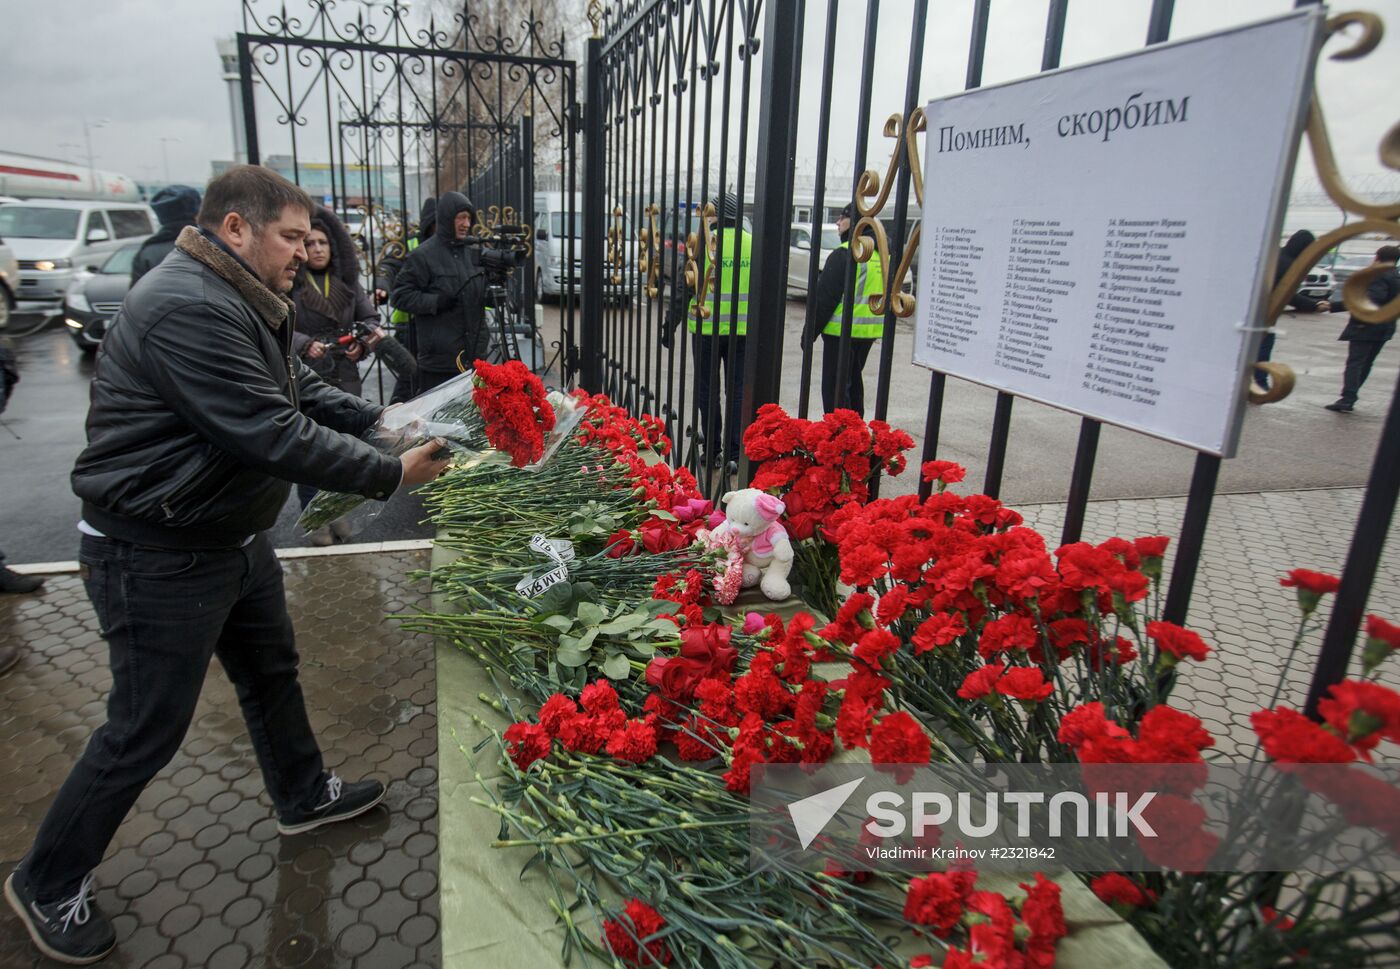 Kazan residents bring flowers in memory of Boeing 737 crash causalities